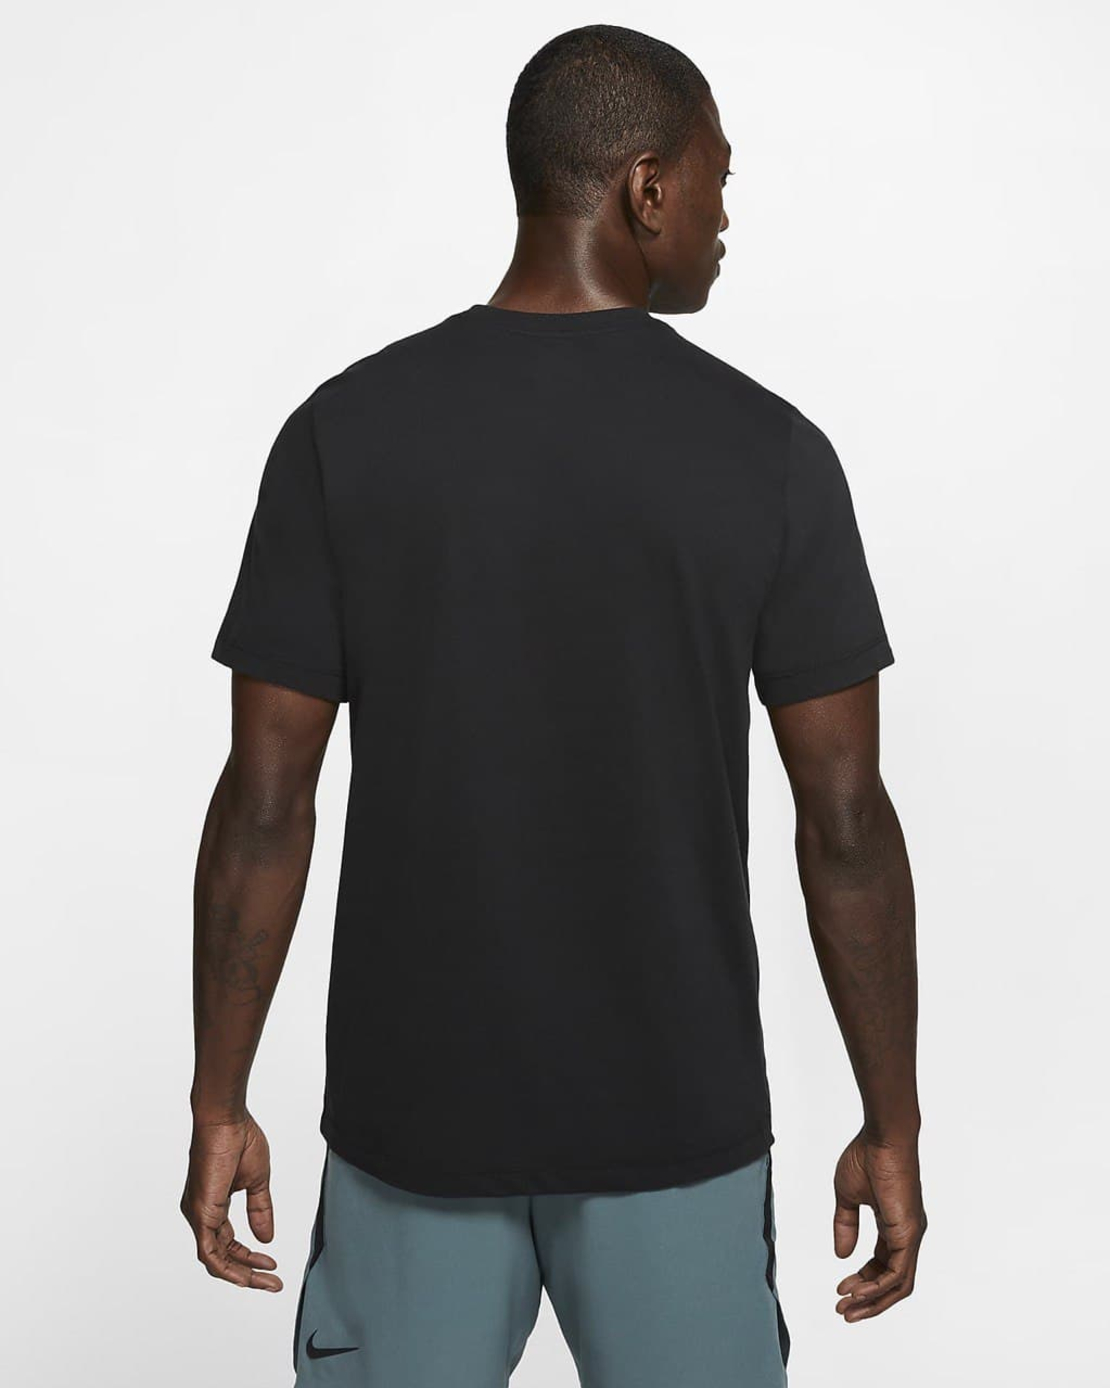 חולצת נייק גברים | Nike Dri-Fit Men's Training T-Shirt